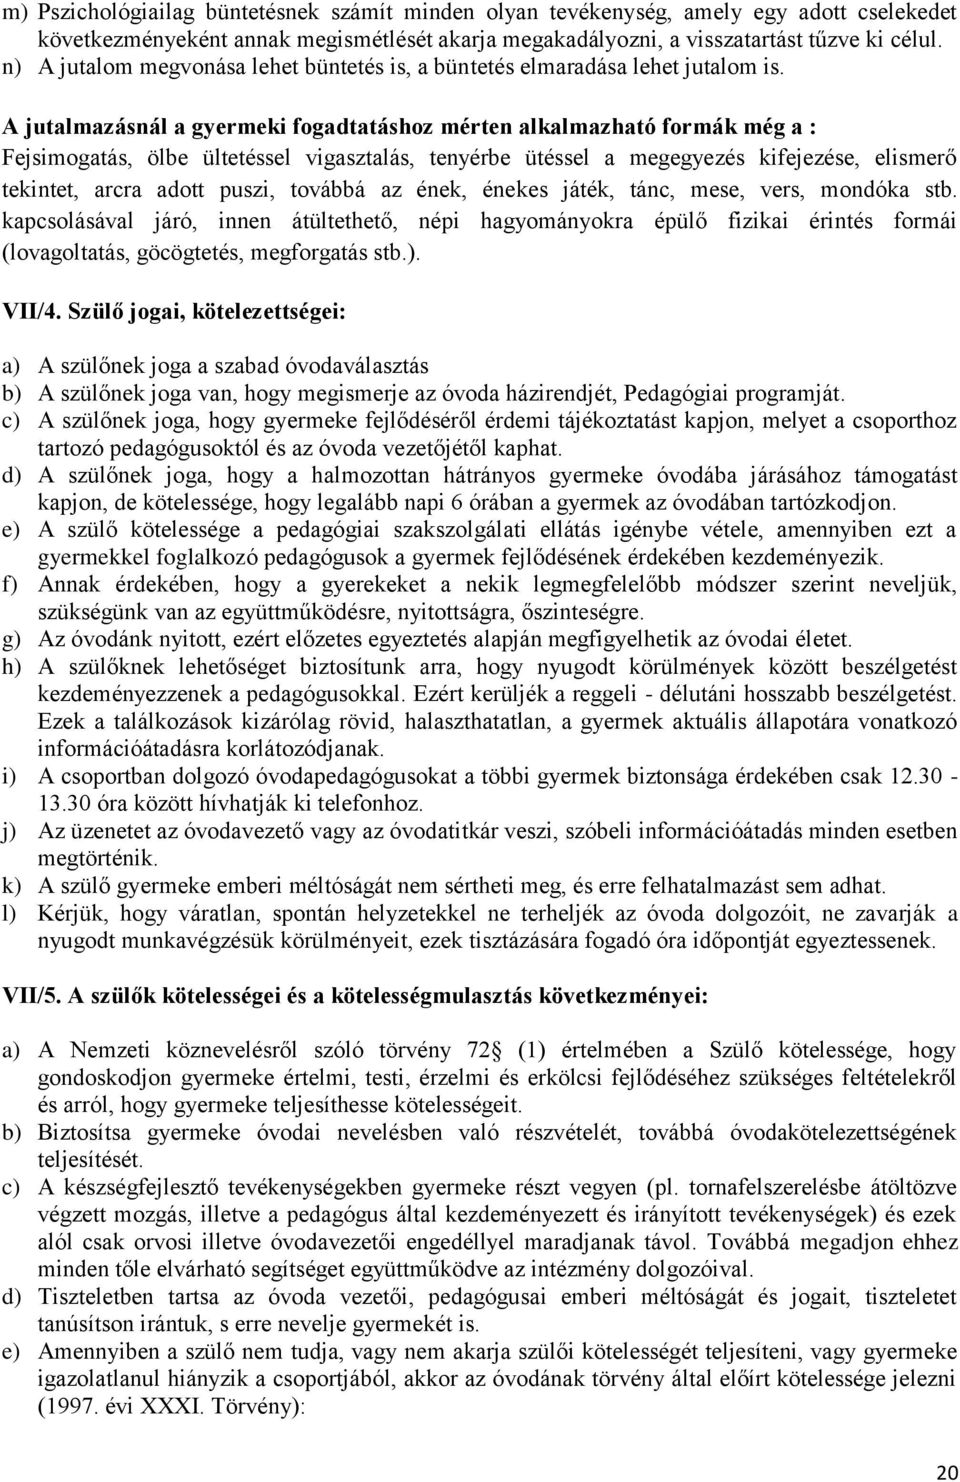 H Á Z I R E N D. óvodatitkár - PDF Ingyenes letöltés